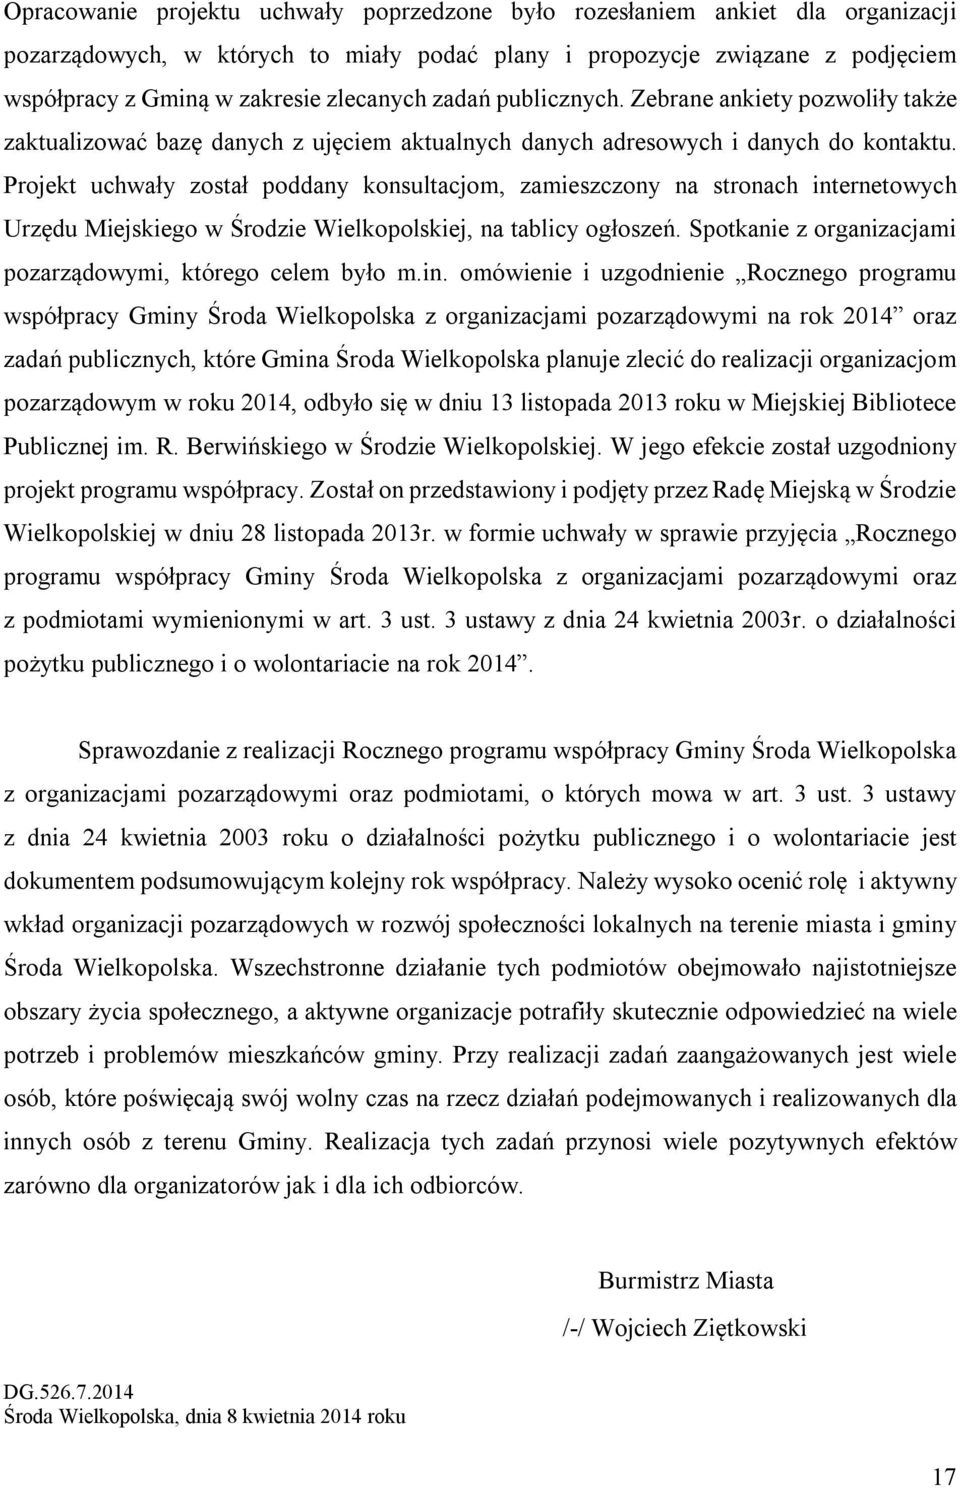 Projekt uchwały został poddany konsultacjom, zamieszczony na stronach internetowych Urzędu Miejskiego w Środzie Wielkopolskiej, na tablicy ogłoszeń.